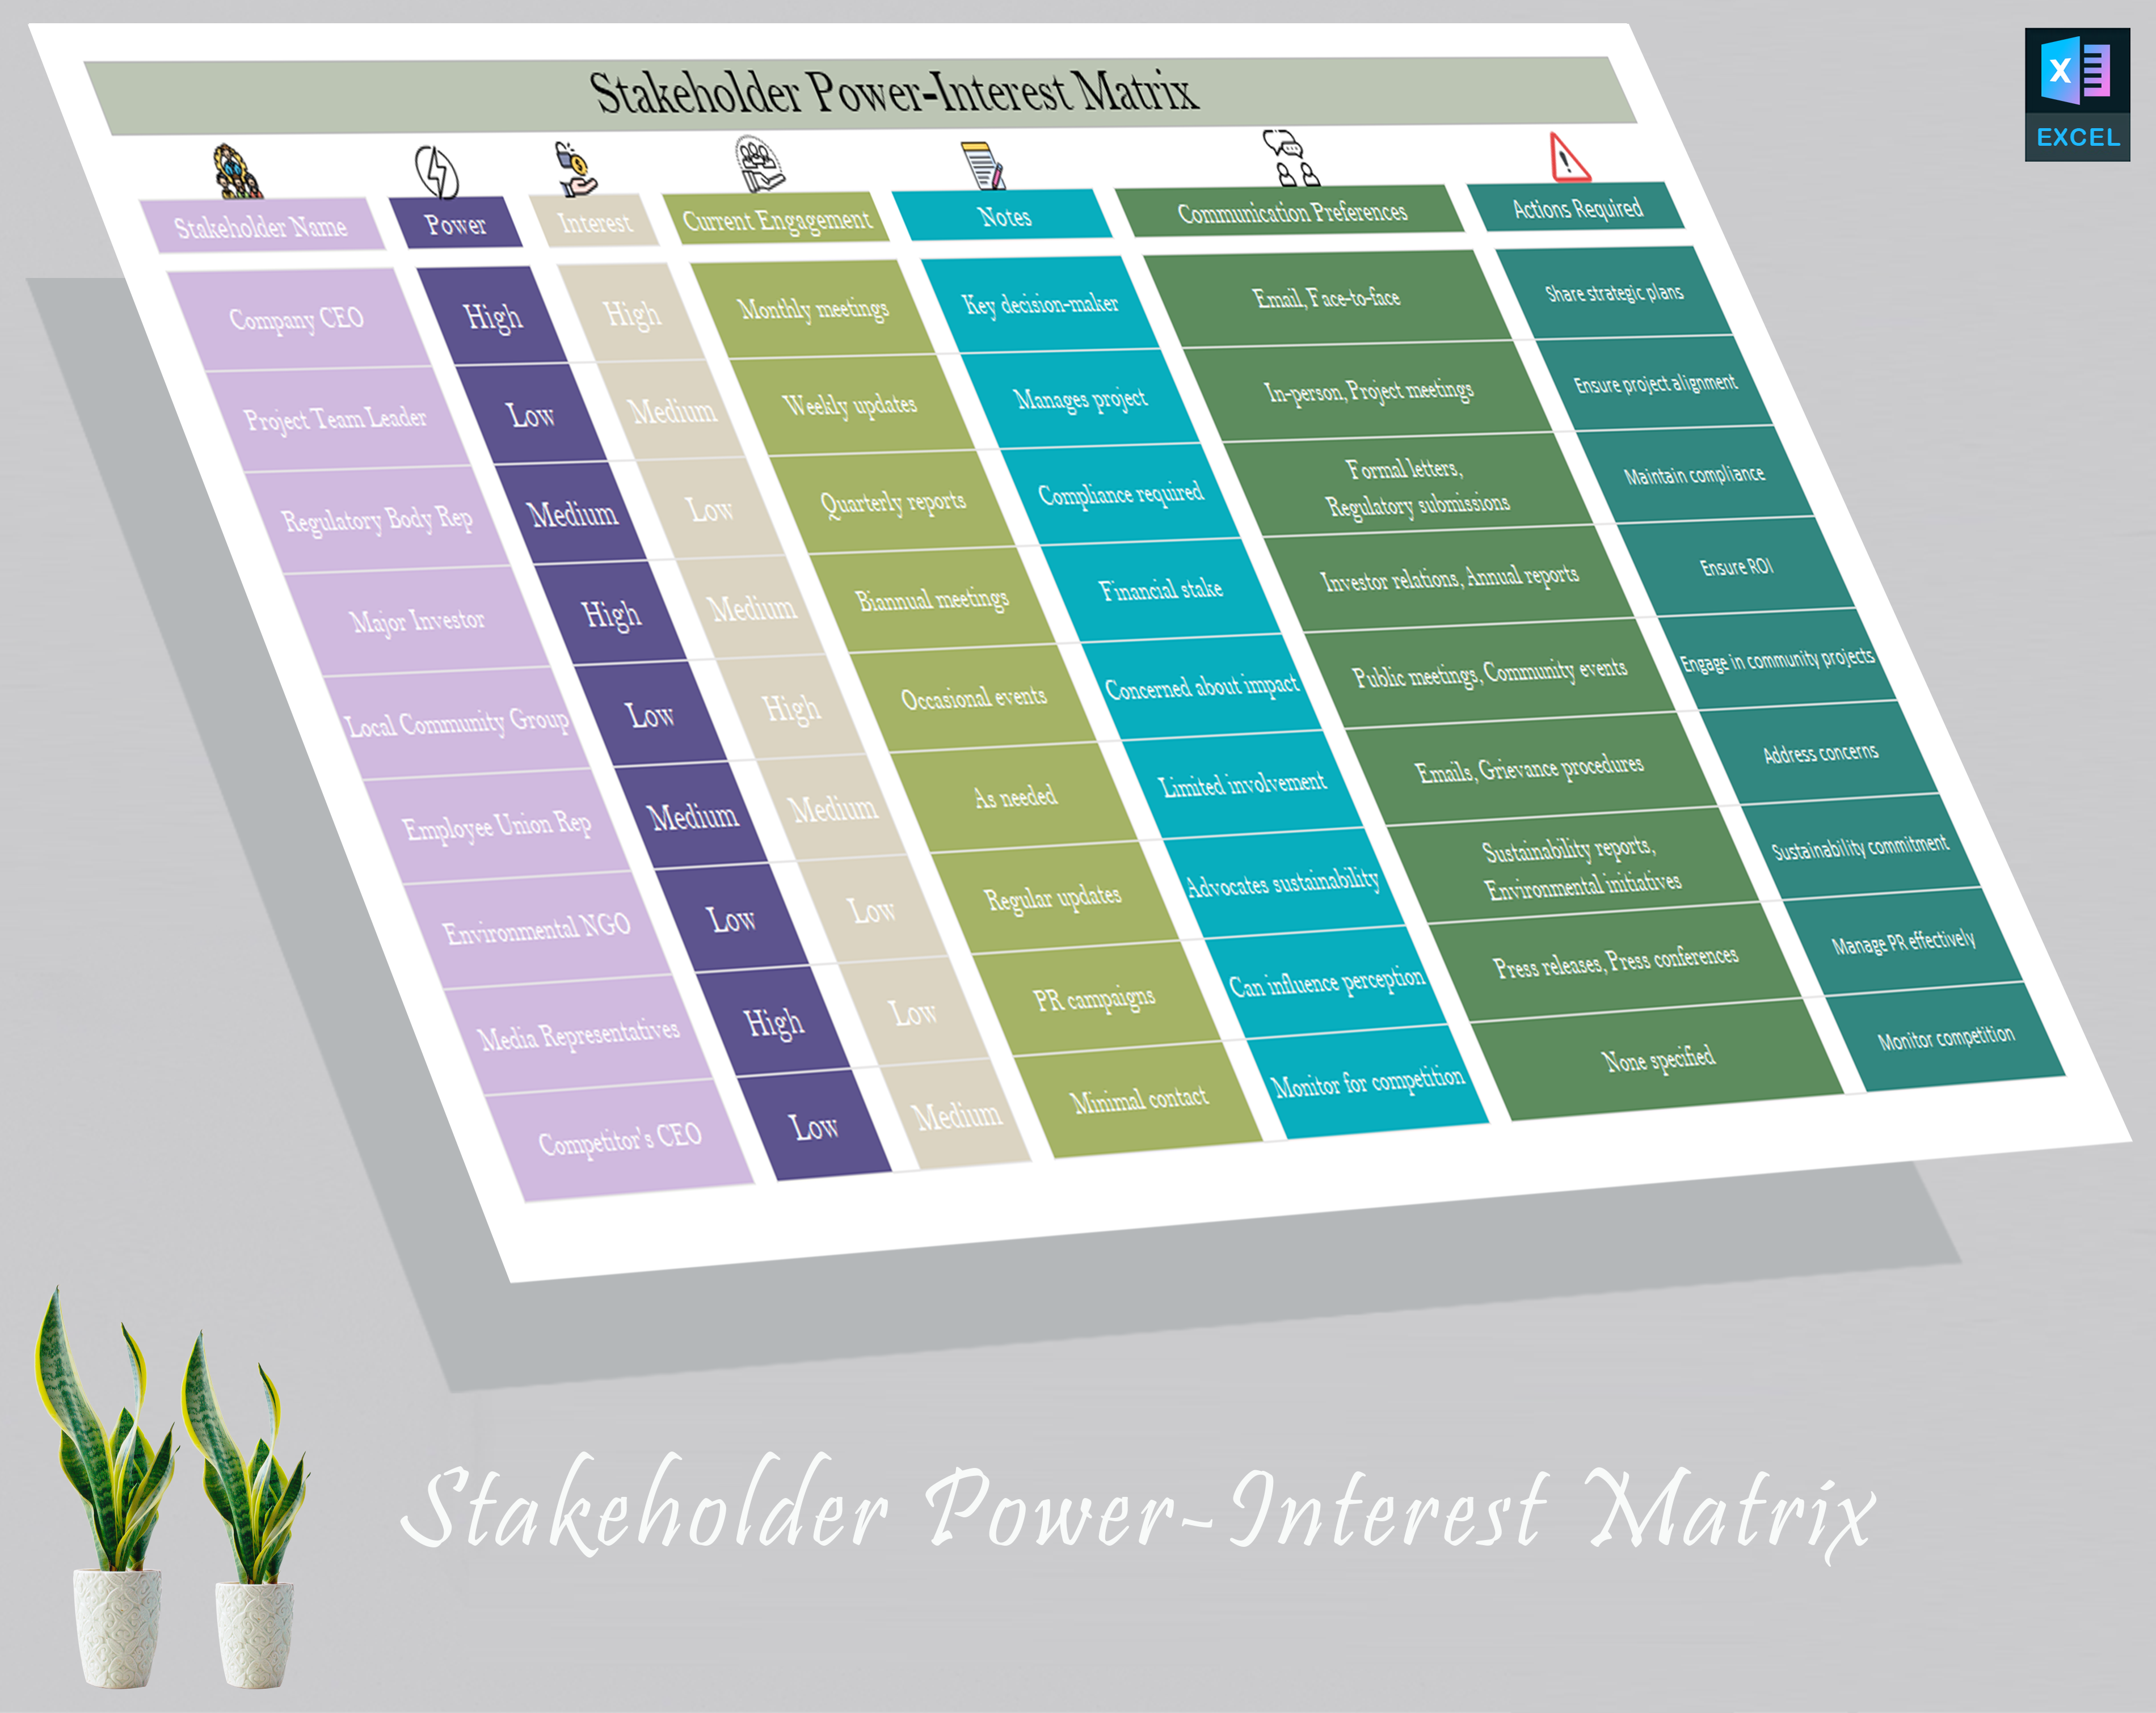 Stakeholder Power-Interest Matrix